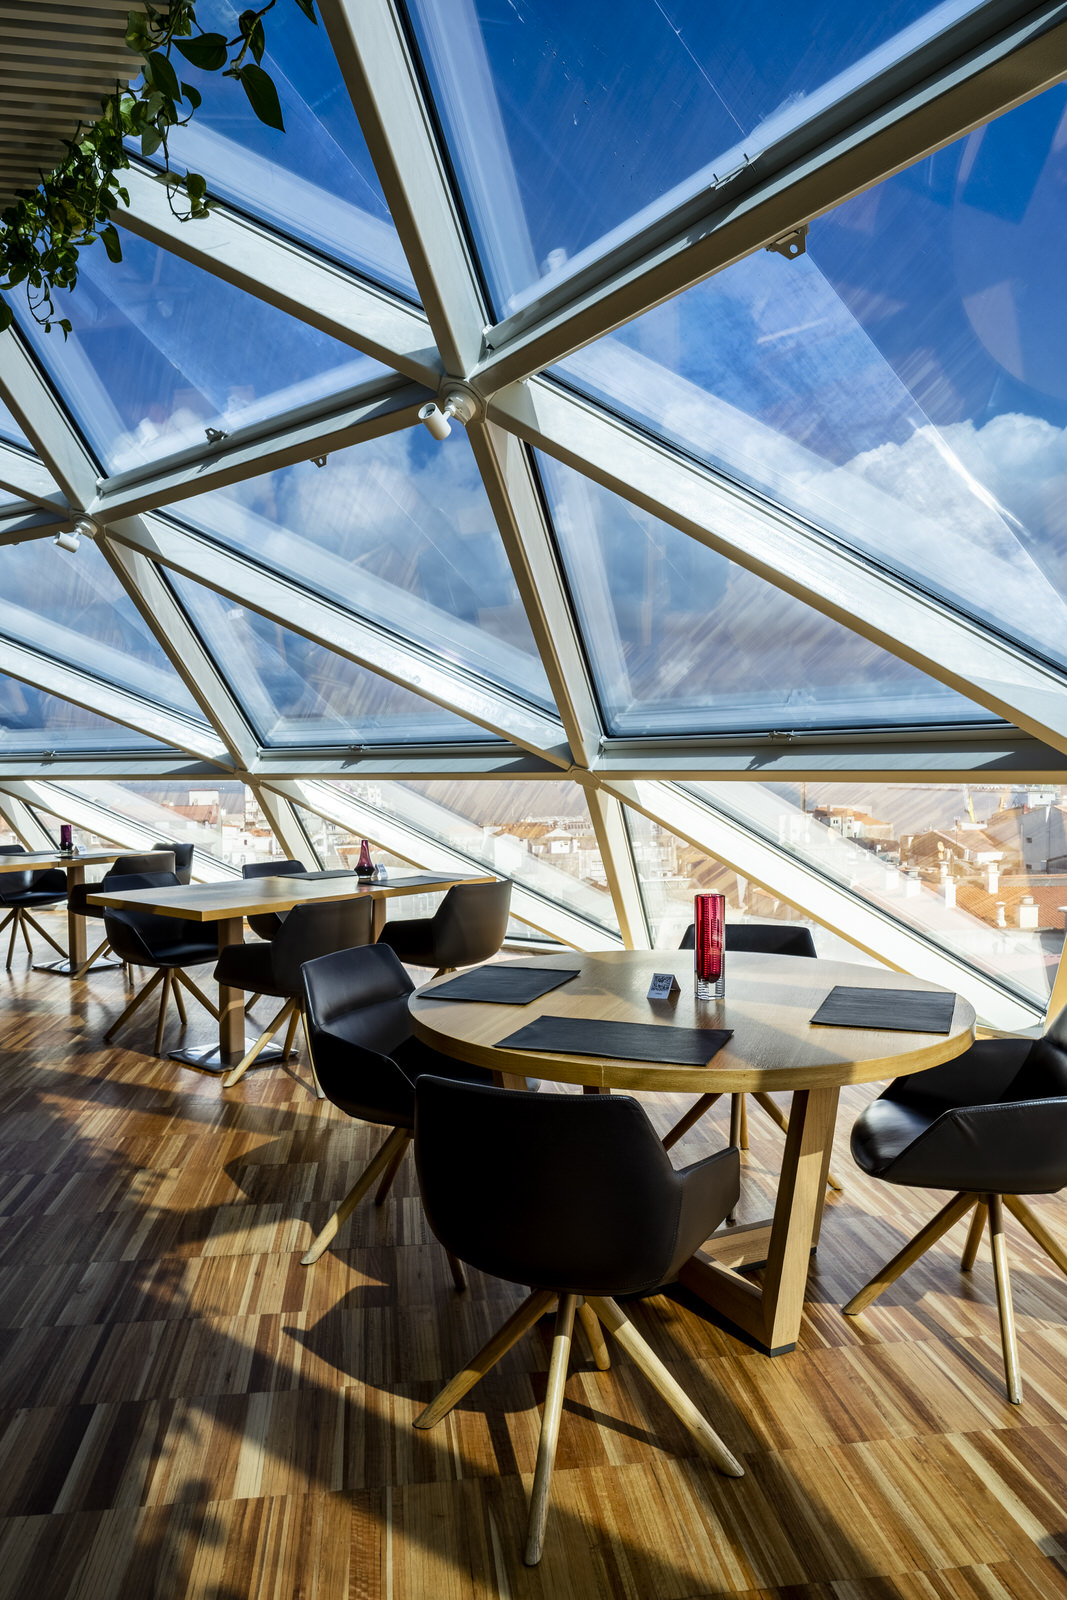 Imagen del interior del restaurante Silabario, con mesas vacías y ventanal